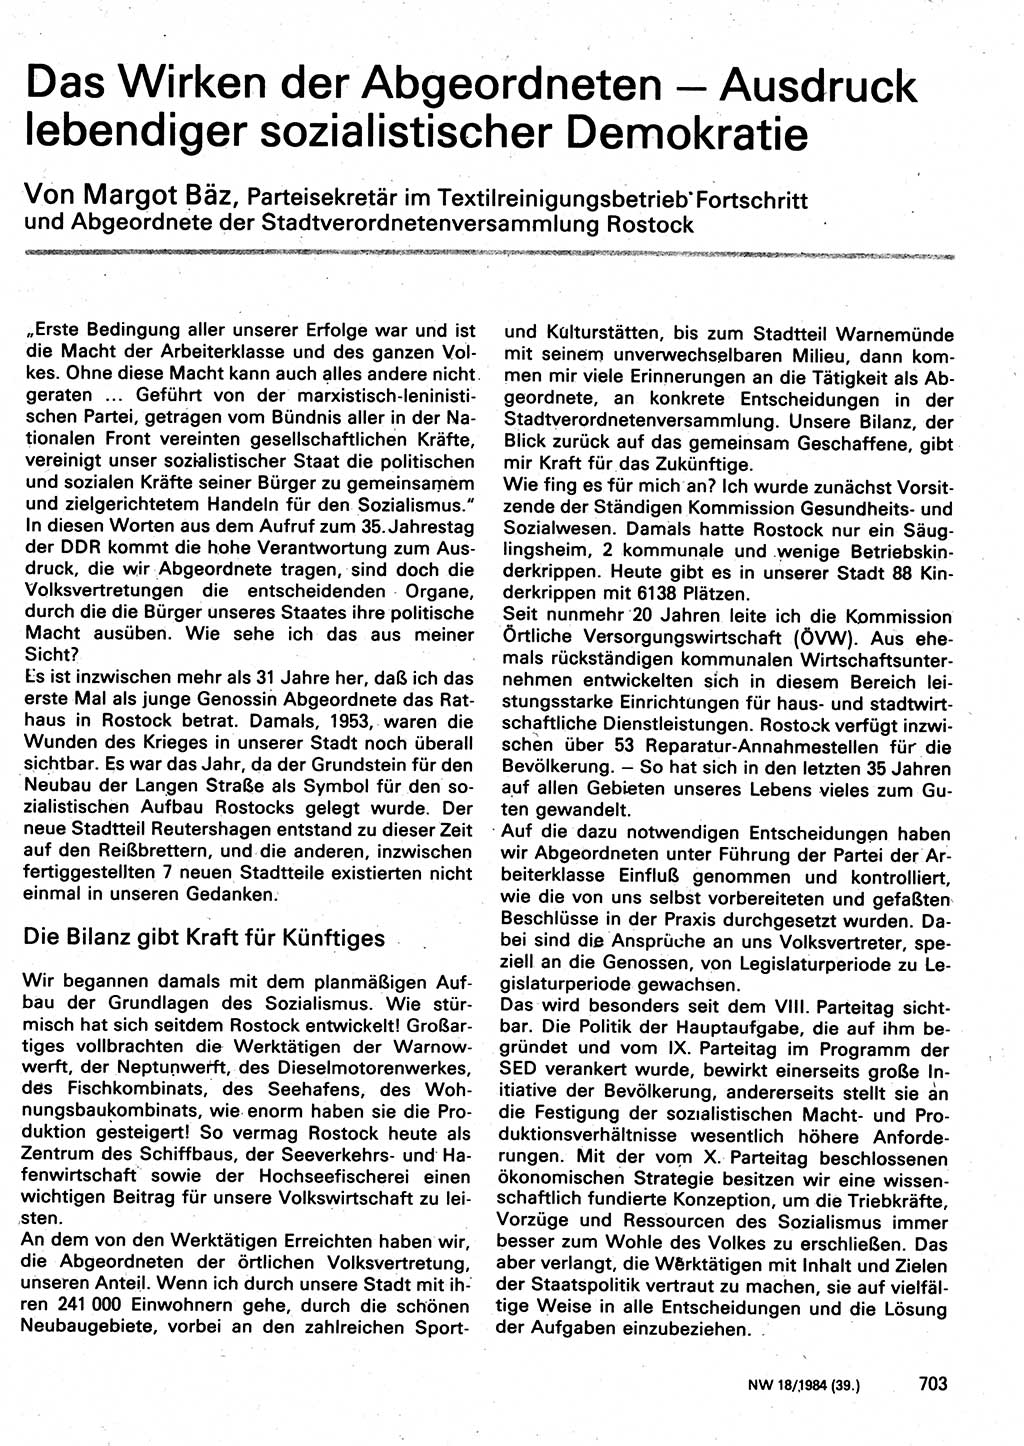 Neuer Weg (NW), Organ des Zentralkomitees (ZK) der SED (Sozialistische Einheitspartei Deutschlands) für Fragen des Parteilebens, 39. Jahrgang [Deutsche Demokratische Republik (DDR)] 1984, Seite 703 (NW ZK SED DDR 1984, S. 703)